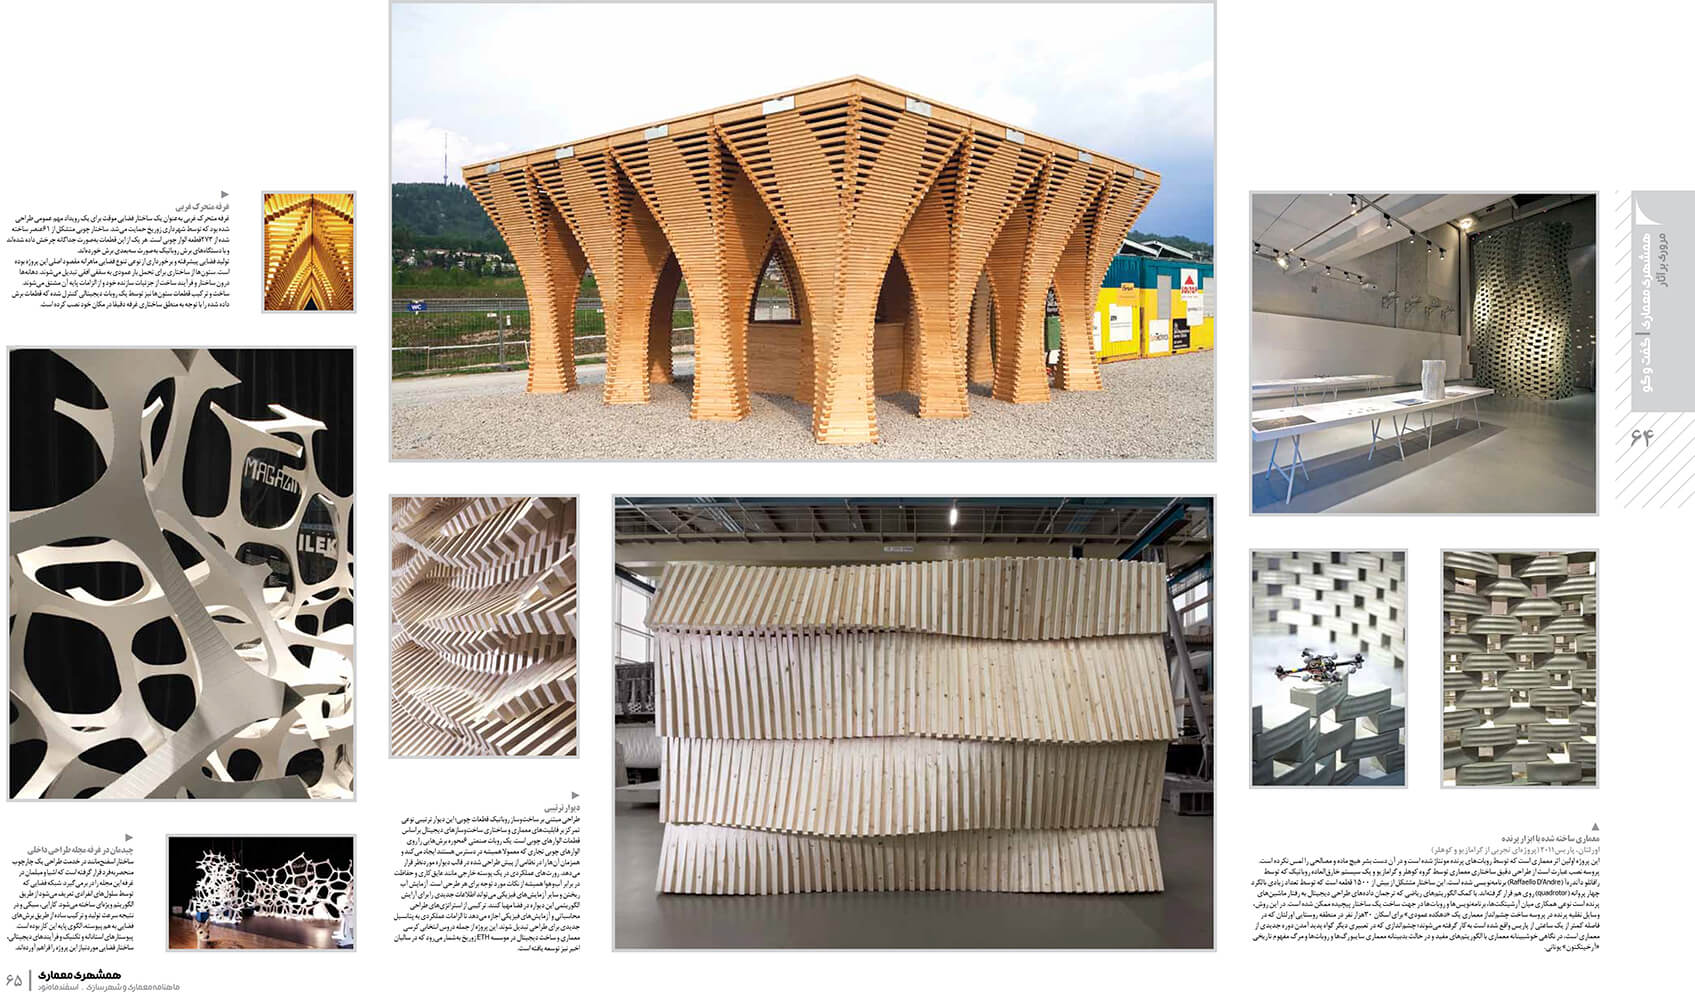 picture no. 5 of publication: Architecture and Algorithm, author: Kambiz Moshtaq